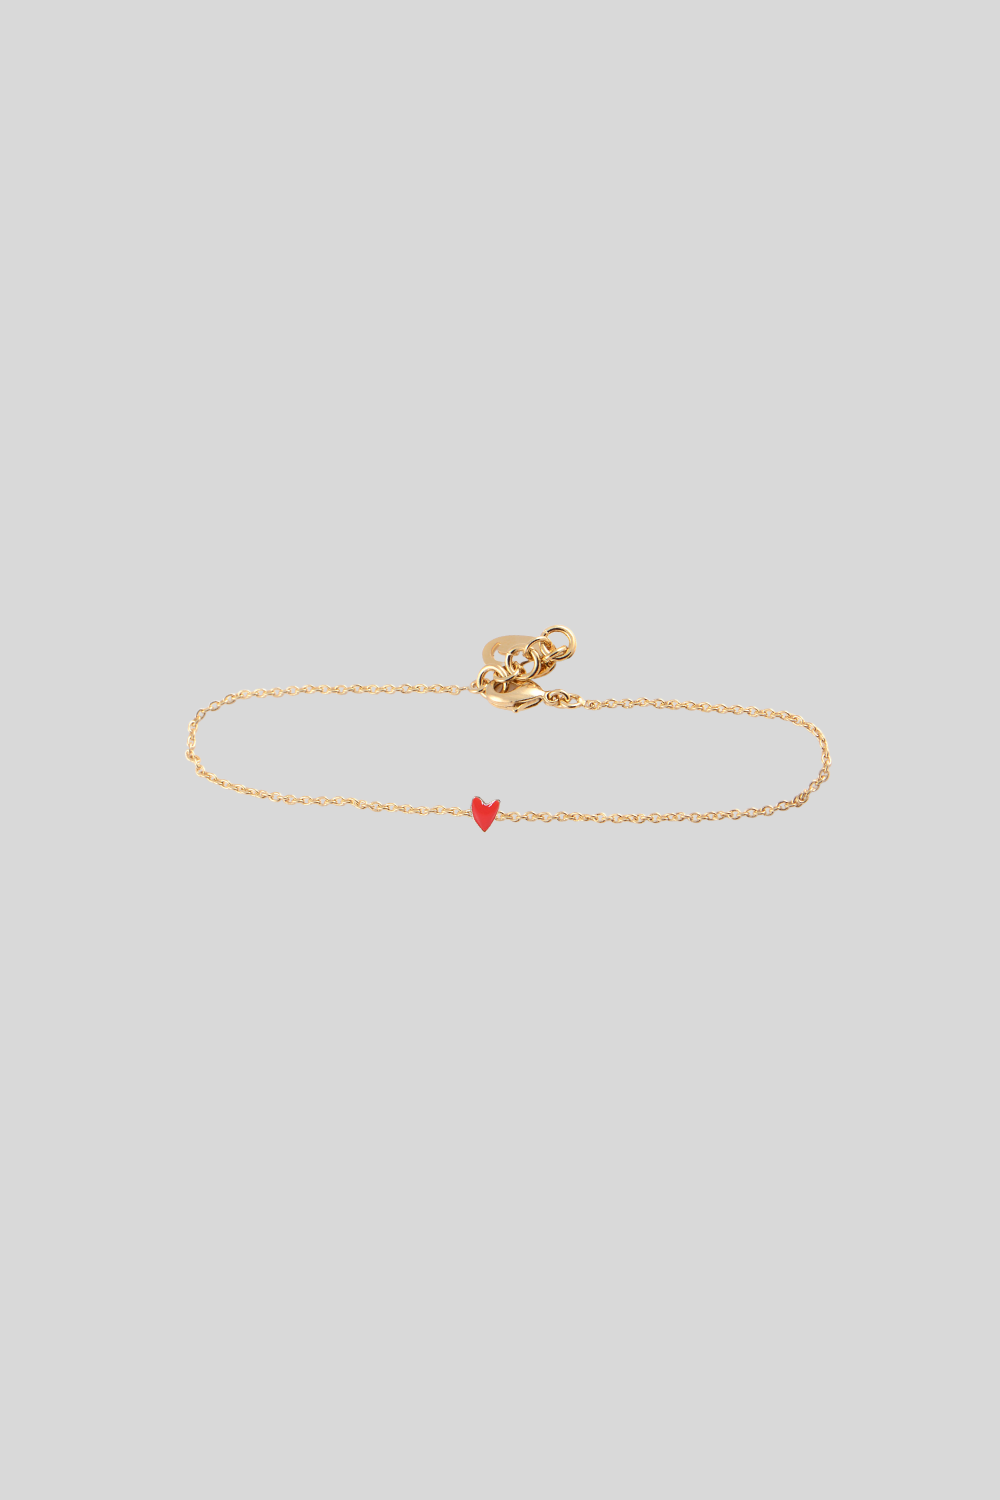 GRANT heart bracelet red